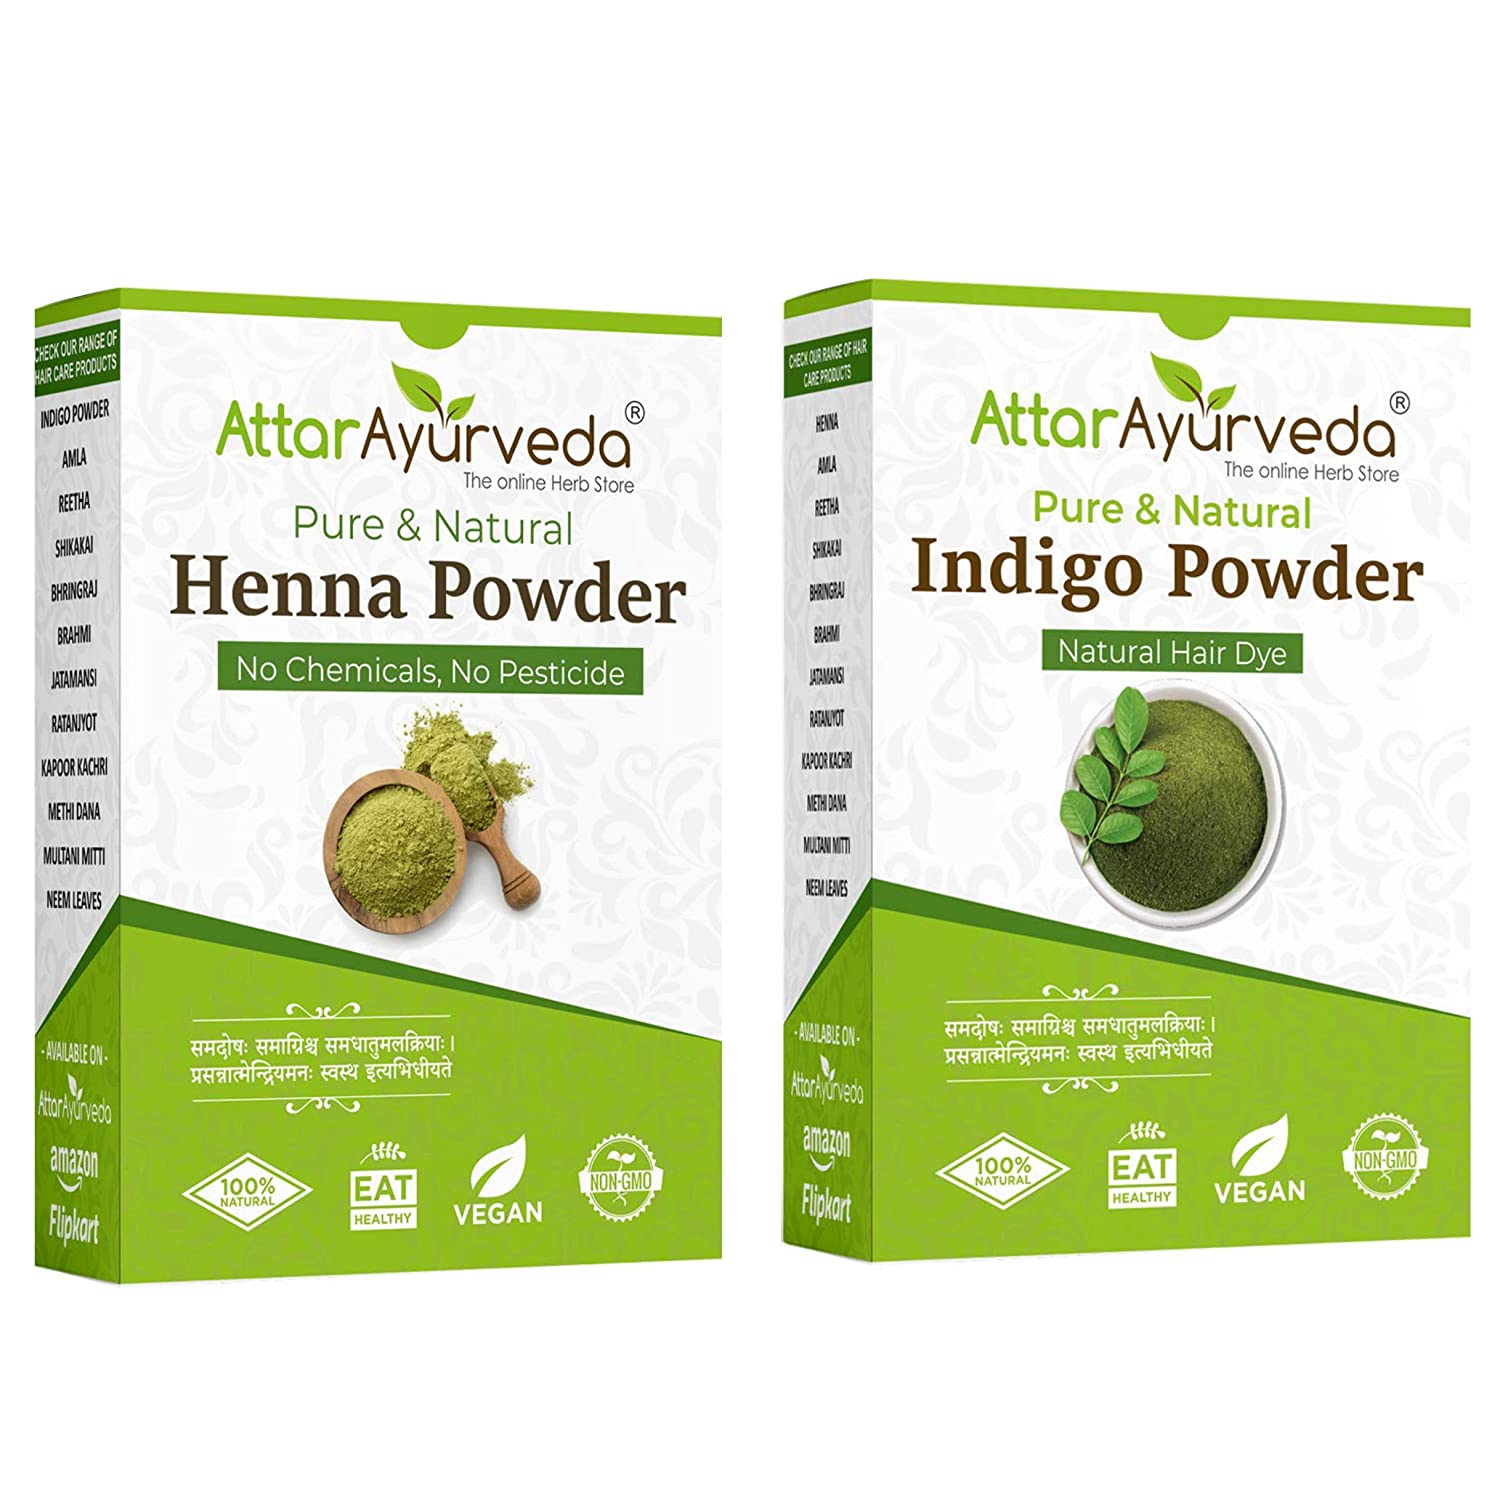 Attar Ayurveda Henna Powder, Indigo Powder Combo Pack - Combo Pack